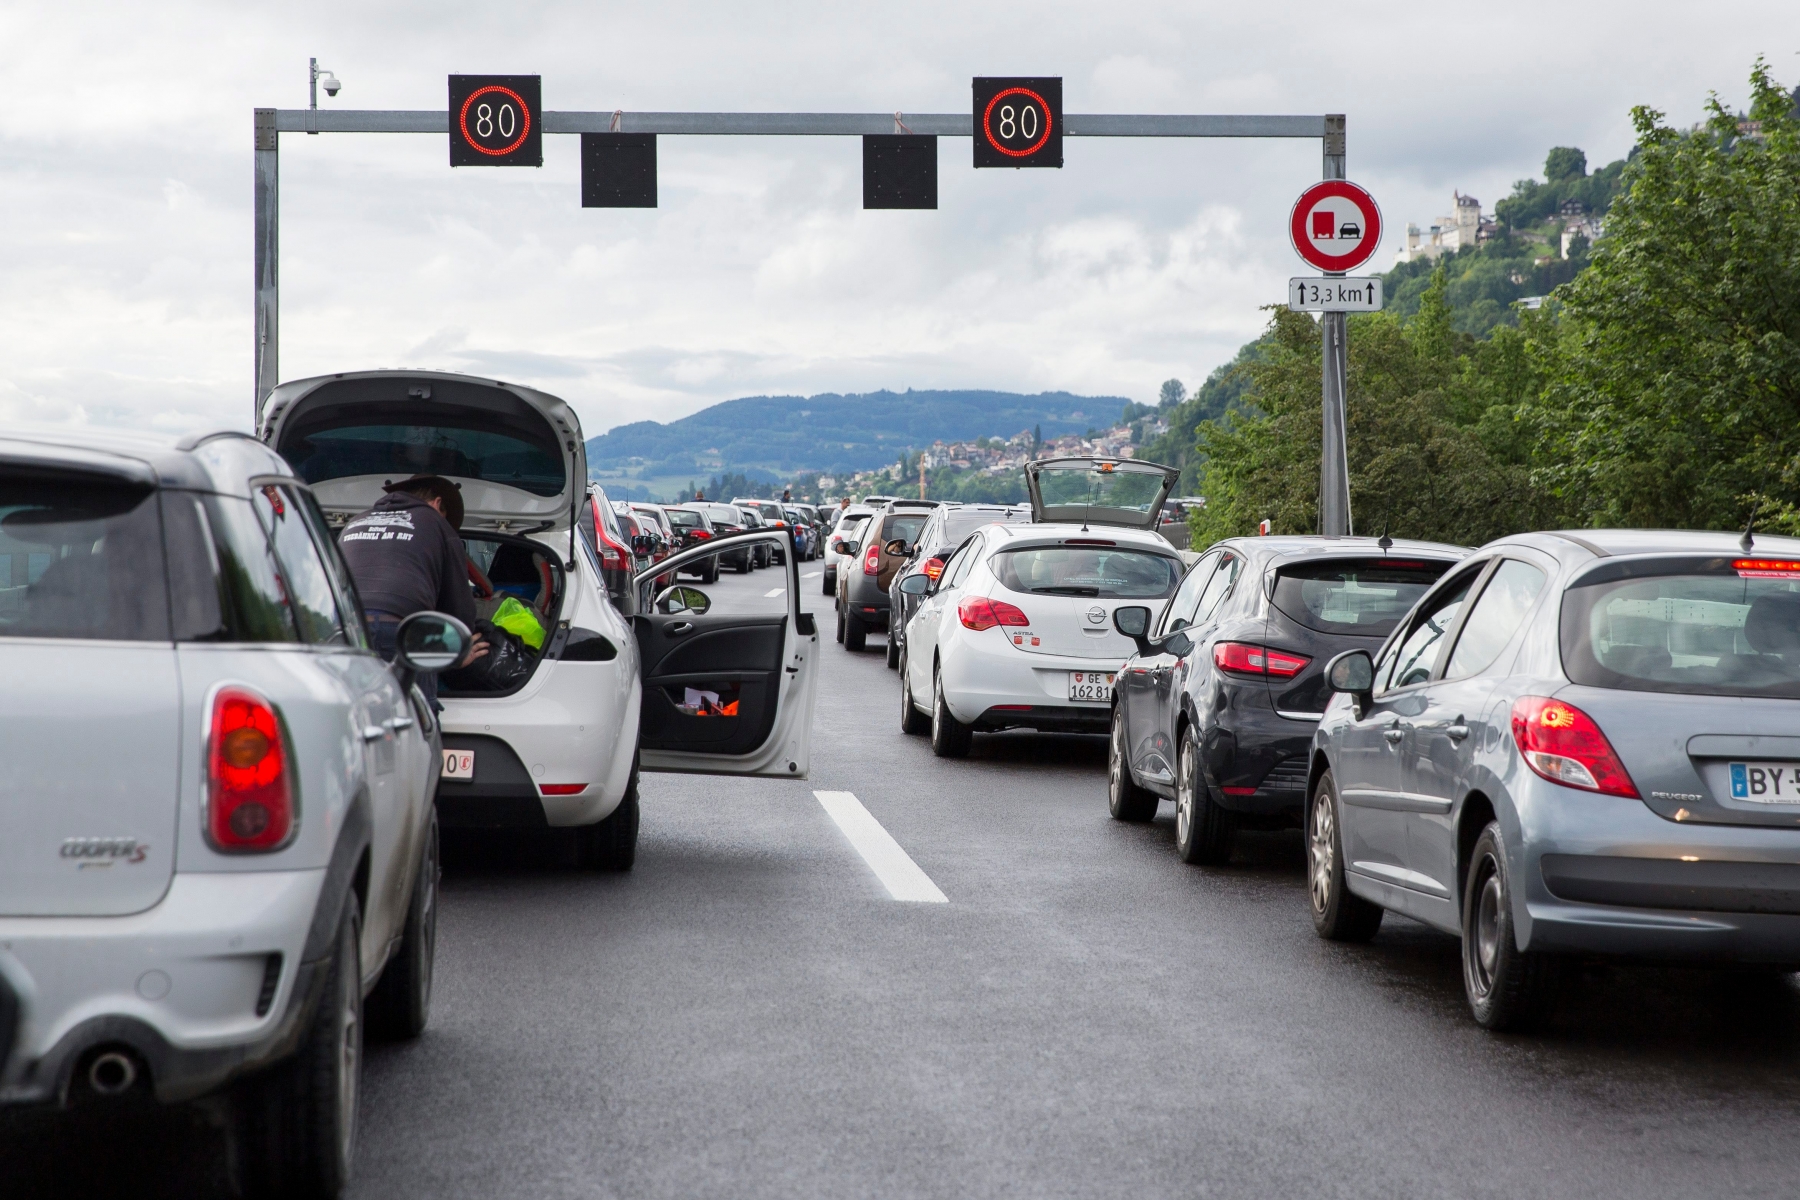 Des voitures sont arretees sur l'autoroute A9 sur le viaducs de Chillon au dessus de Villeneuve en direction de Montreux ce dimanche 12 juin 2016. La trafic routier est difficile sur les autoroutes Suisses romandes. (KEYSTONE/Cyril Zingaro) SUISSE TRAFIC ROUTIER